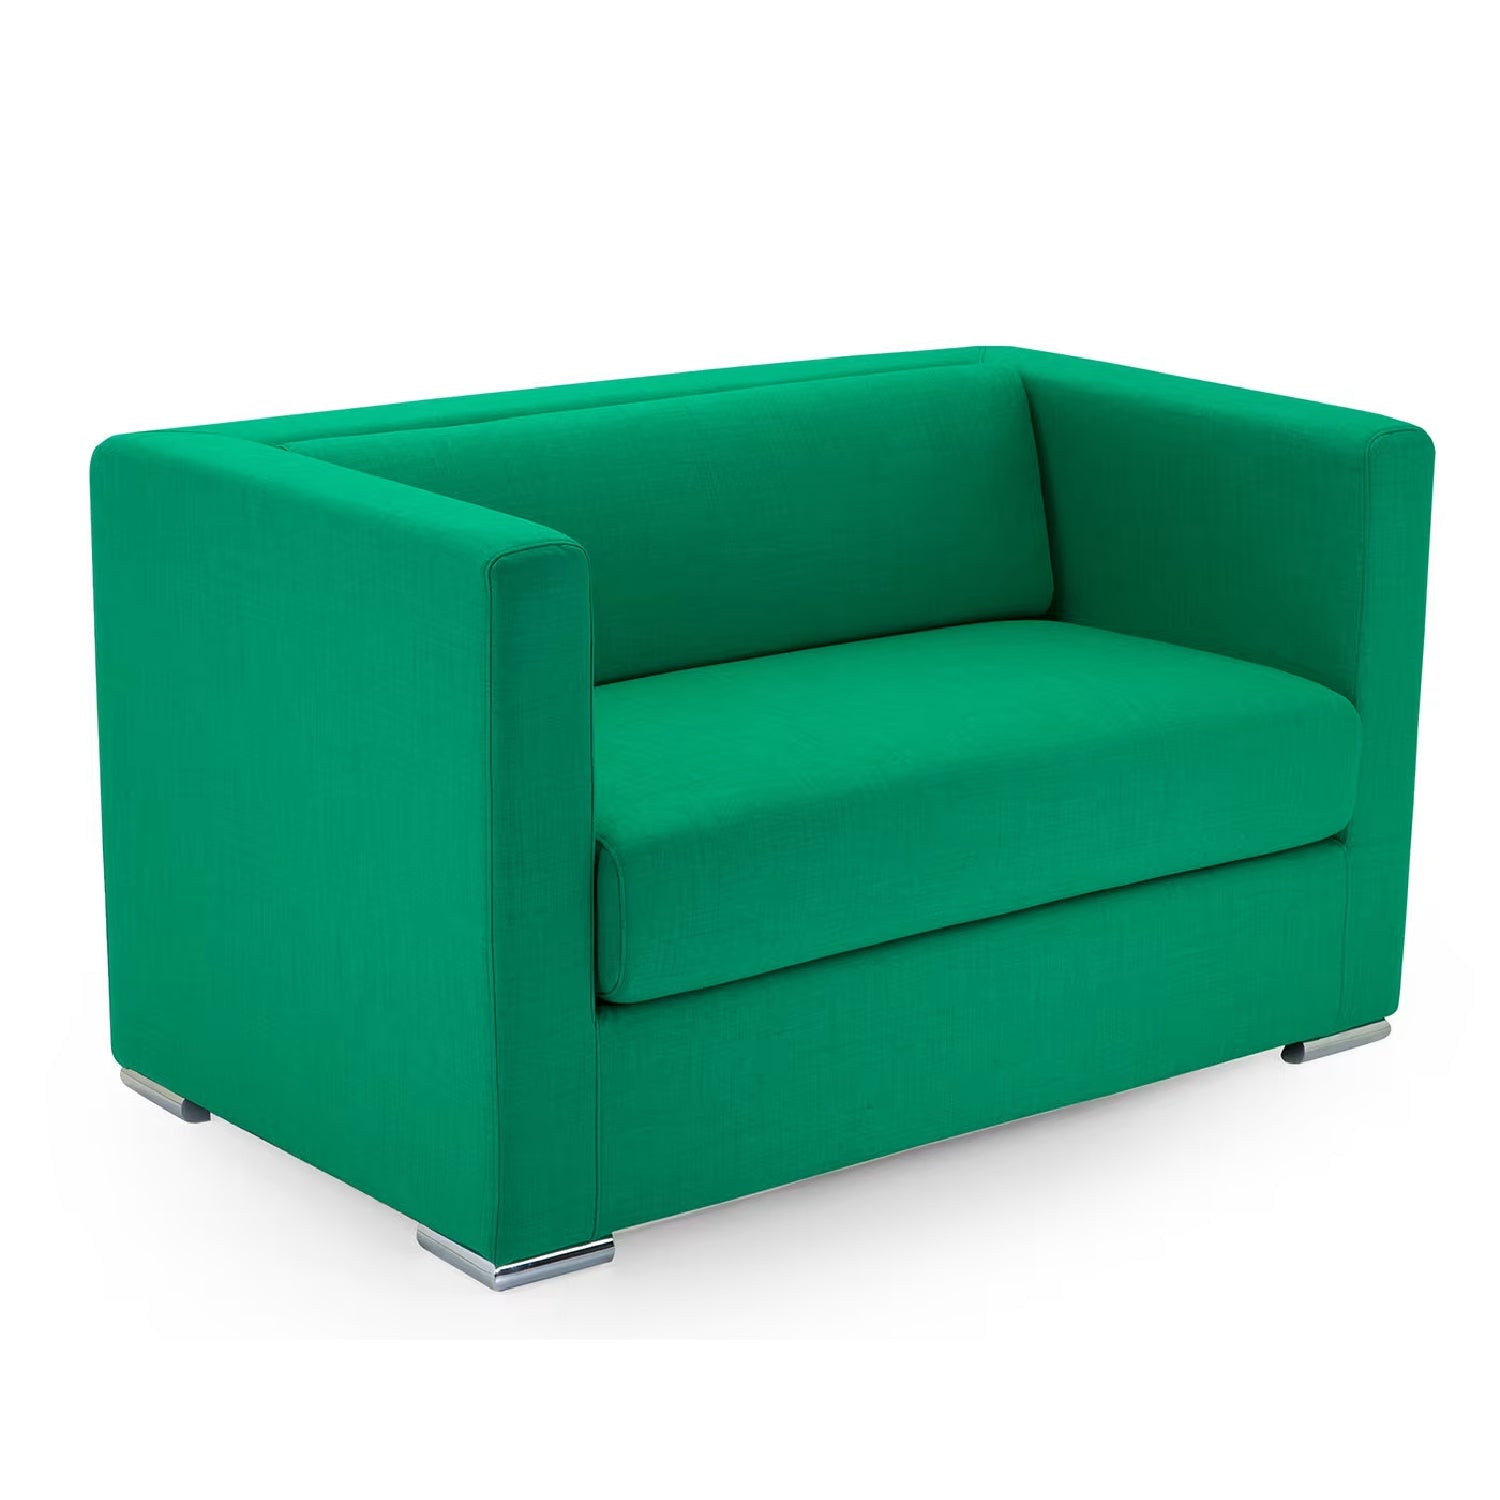 102 Seafoam Green Sofa by Domingo Salotti